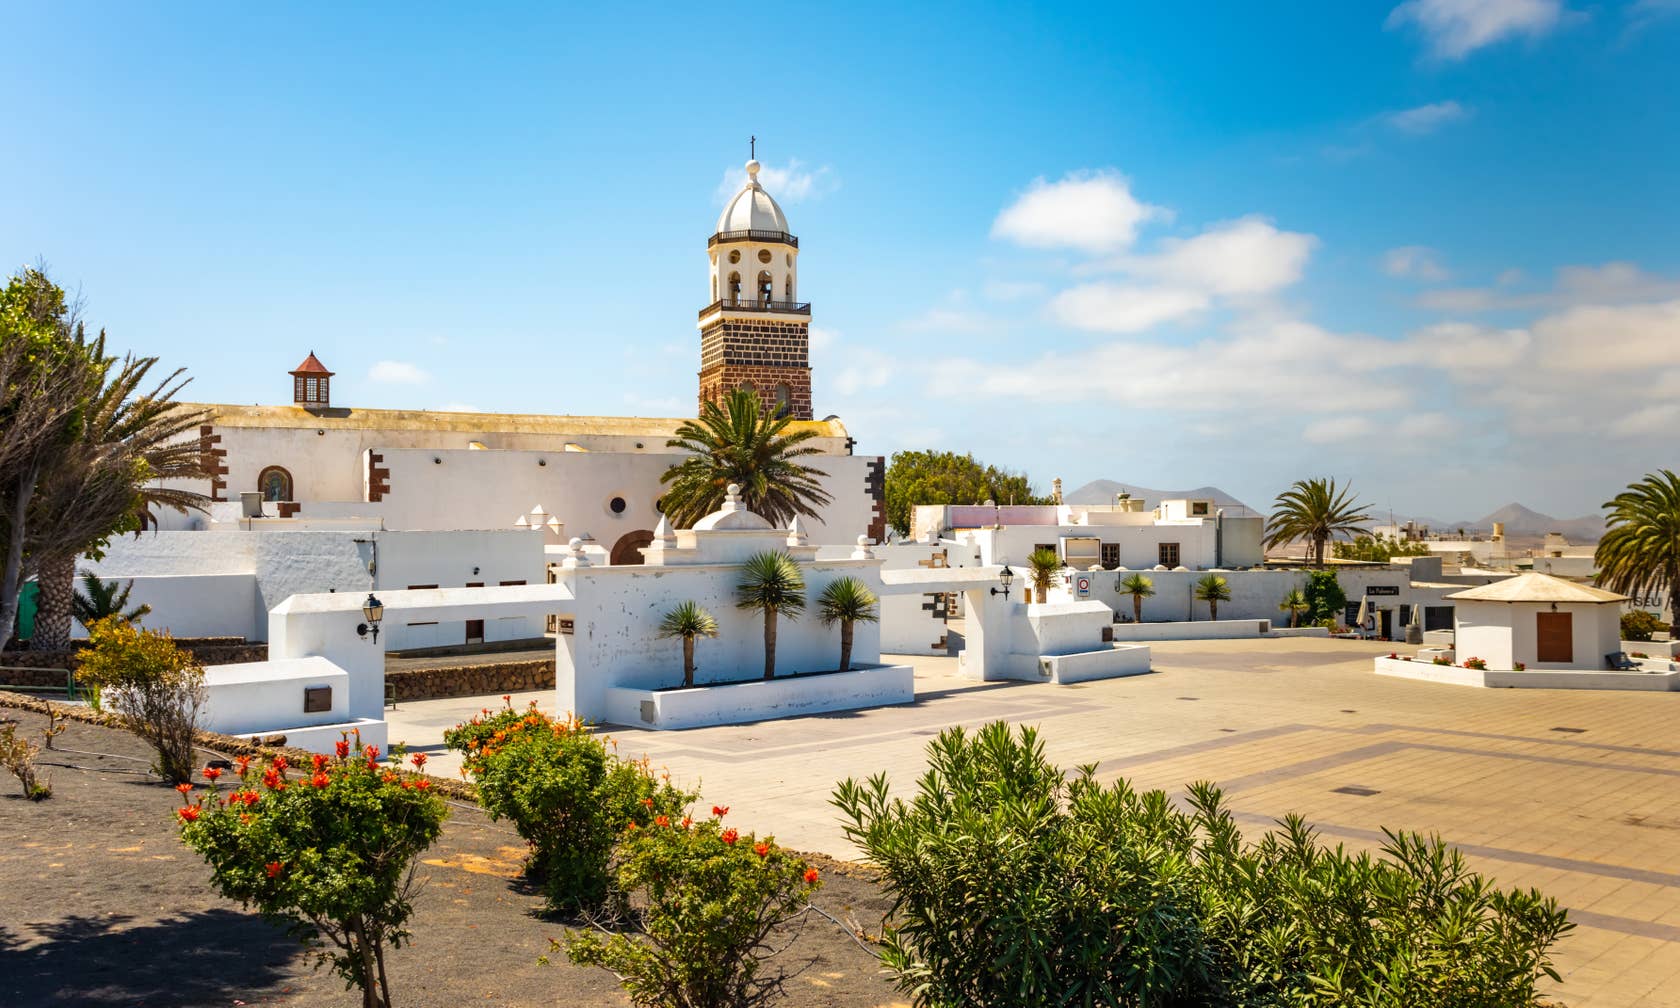 Vacation rentals in Lanzarote